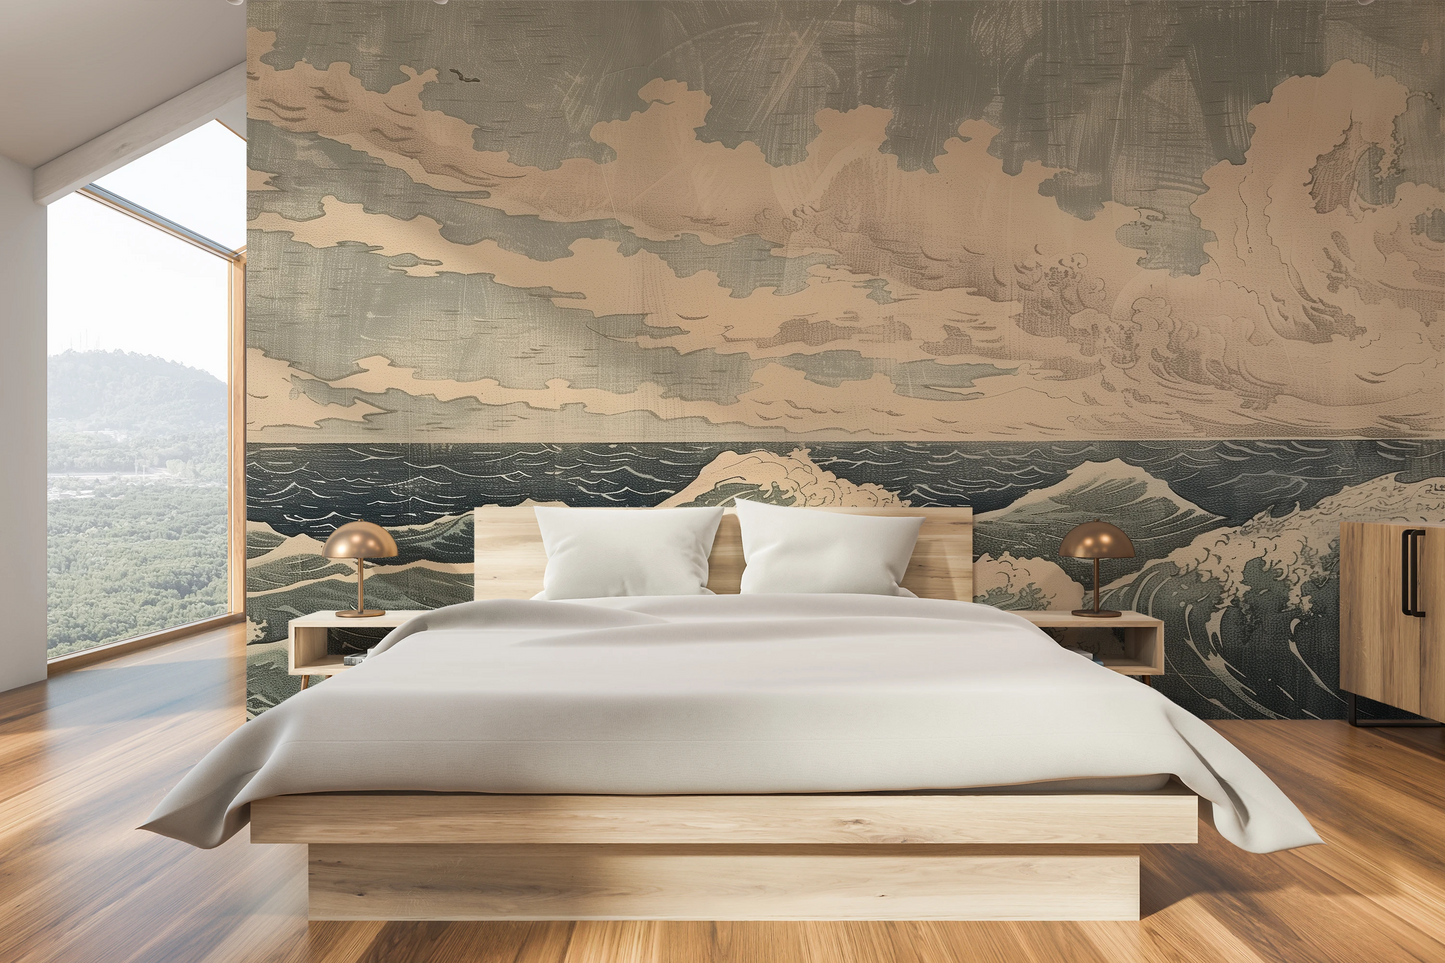 Fototapeta malowana o nazwie Cloudy Sea Harmony pokazana w aranżacji wnętrza.